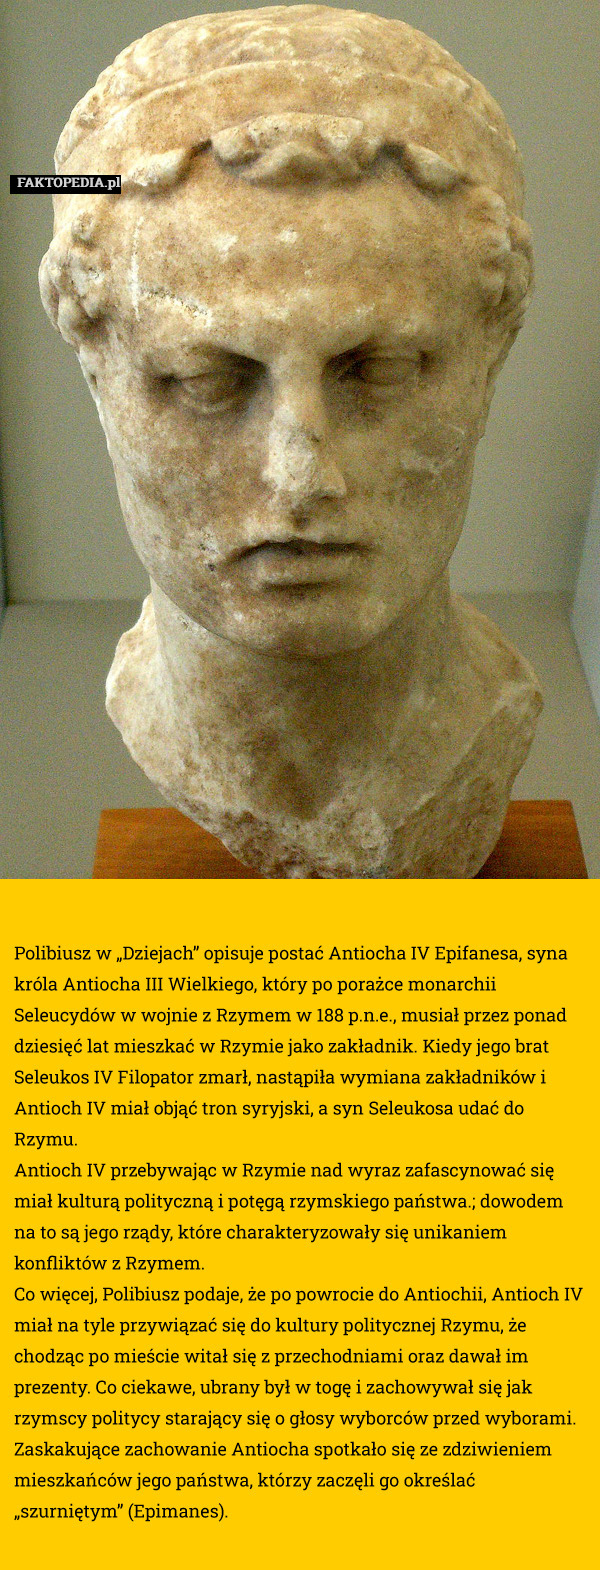 Polibiusz w „Dziejach” opisuje postać Antiocha IV Epifanesa, syna króla Antiocha III Wielkiego, który po porażce monarchii Seleucydów w wojnie z Rzymem w 188 p.n.e., musiał przez ponad dziesięć lat mieszkać w Rzymie jako zakładnik. Kiedy jego brat Seleukos IV Filopator zmarł, nastąpiła wymiana zakładników i Antioch IV miał objąć tron syryjski, a syn Seleukosa udać do Rzymu.
Antioch IV przebywając w Rzymie nad wyraz zafascynować się miał kulturą polityczną i potęgą rzymskiego państwa.; dowodem na to są jego rządy, które charakteryzowały się unikaniem konfliktów z Rzymem.
Co więcej, Polibiusz podaje, że po powrocie do Antiochii, Antioch IV miał na tyle przywiązać się do kultury politycznej Rzymu, że chodząc po mieście witał się z przechodniami oraz dawał im prezenty. Co ciekawe, ubrany był w togę i zachowywał się jak rzymscy politycy starający się o głosy wyborców przed wyborami.
Zaskakujące zachowanie Antiocha spotkało się ze zdziwieniem mieszkańców jego państwa, którzy zaczęli go określać „szurniętym” (Epimanes). 